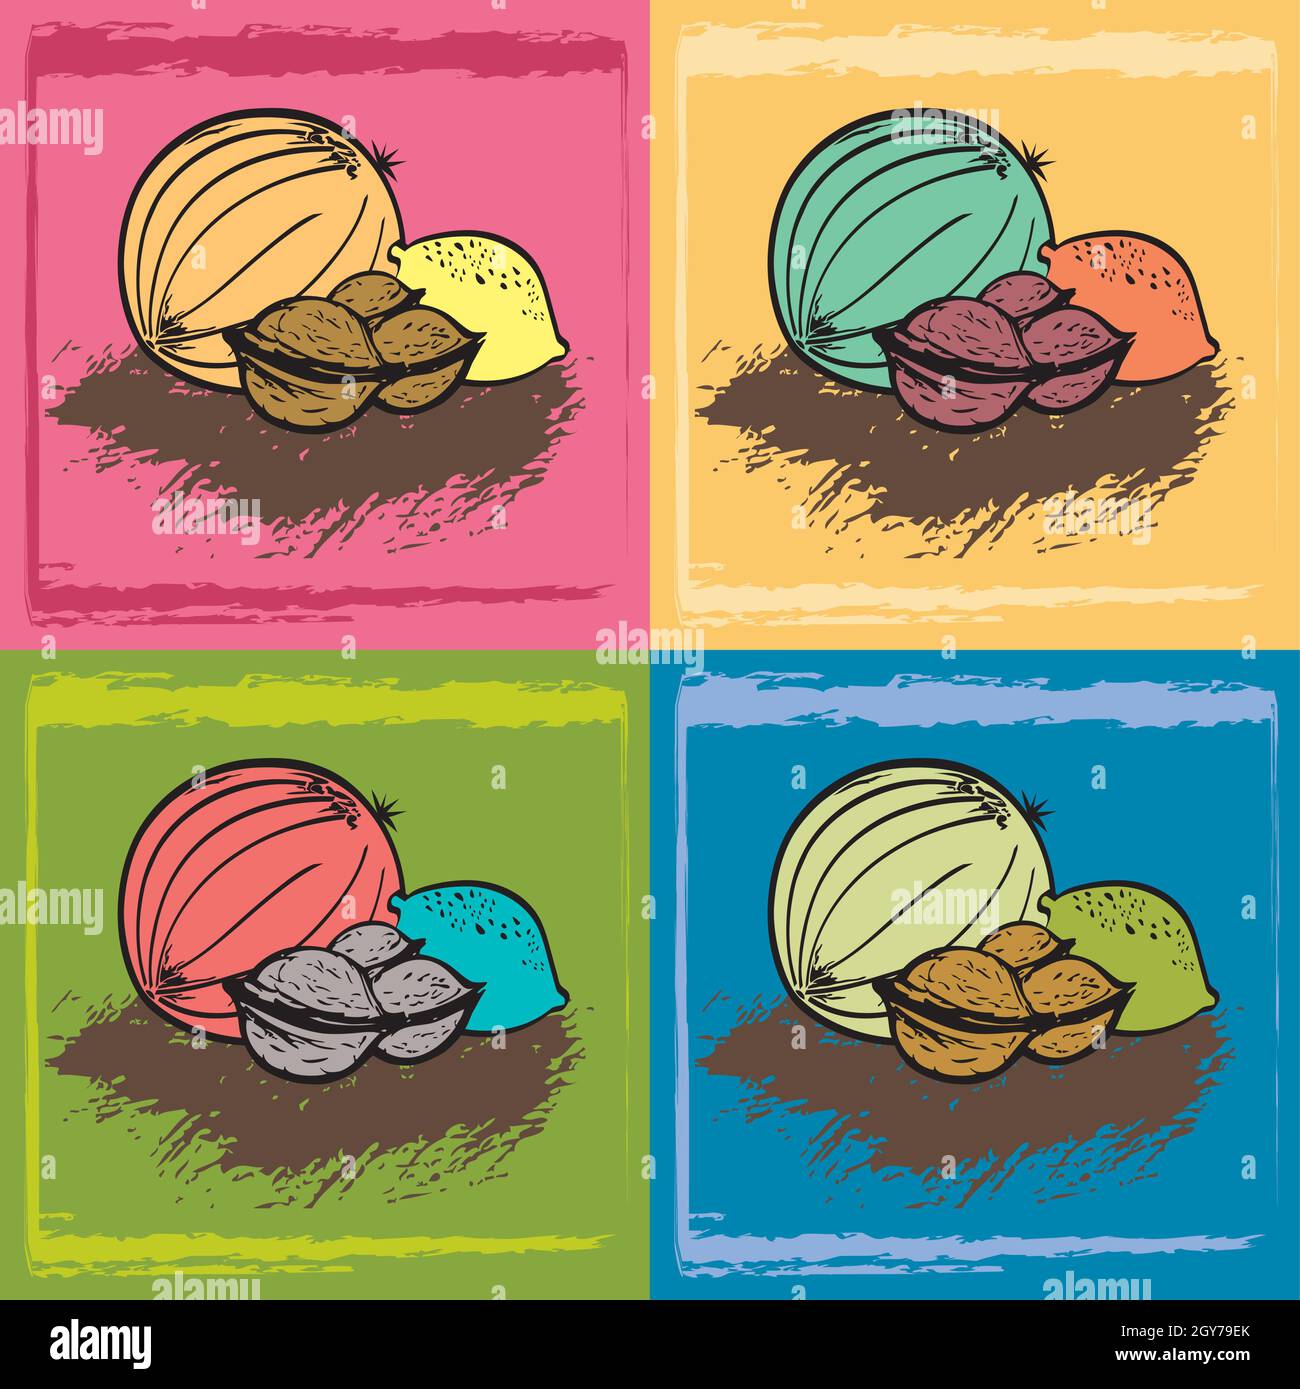 Obstset - Melone, Walnüsse und Zitrone - 4 handgezeichnete Digitale Illustrationen, Vegetarisch Vegan Healthy Natural Food Icons auf verschiedenen Hintergründen Stock Vektor